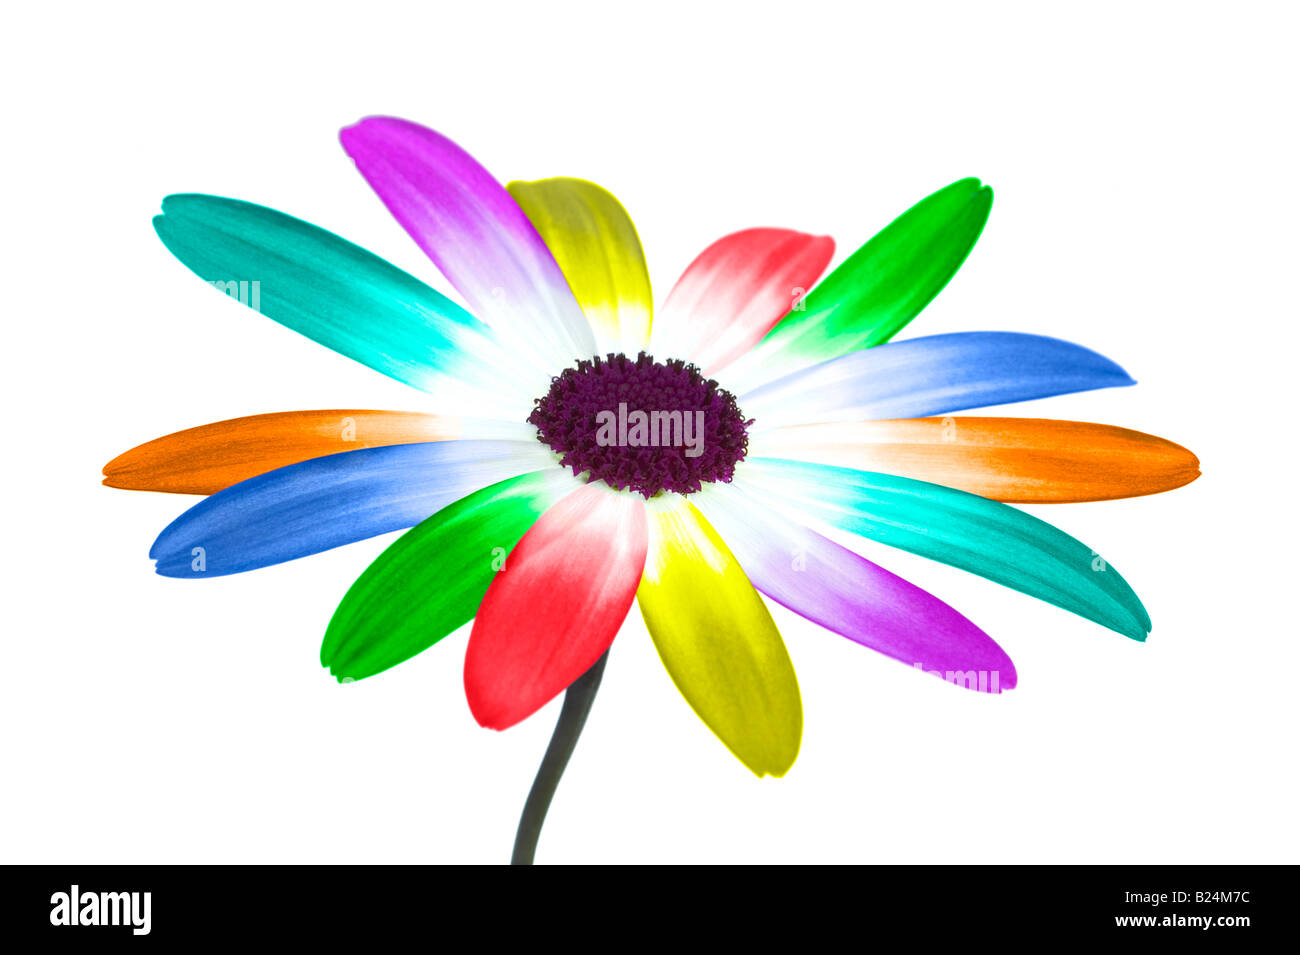 Immagine astratta di una margherita con i suoi petali a colori dell'arcobaleno Foto Stock